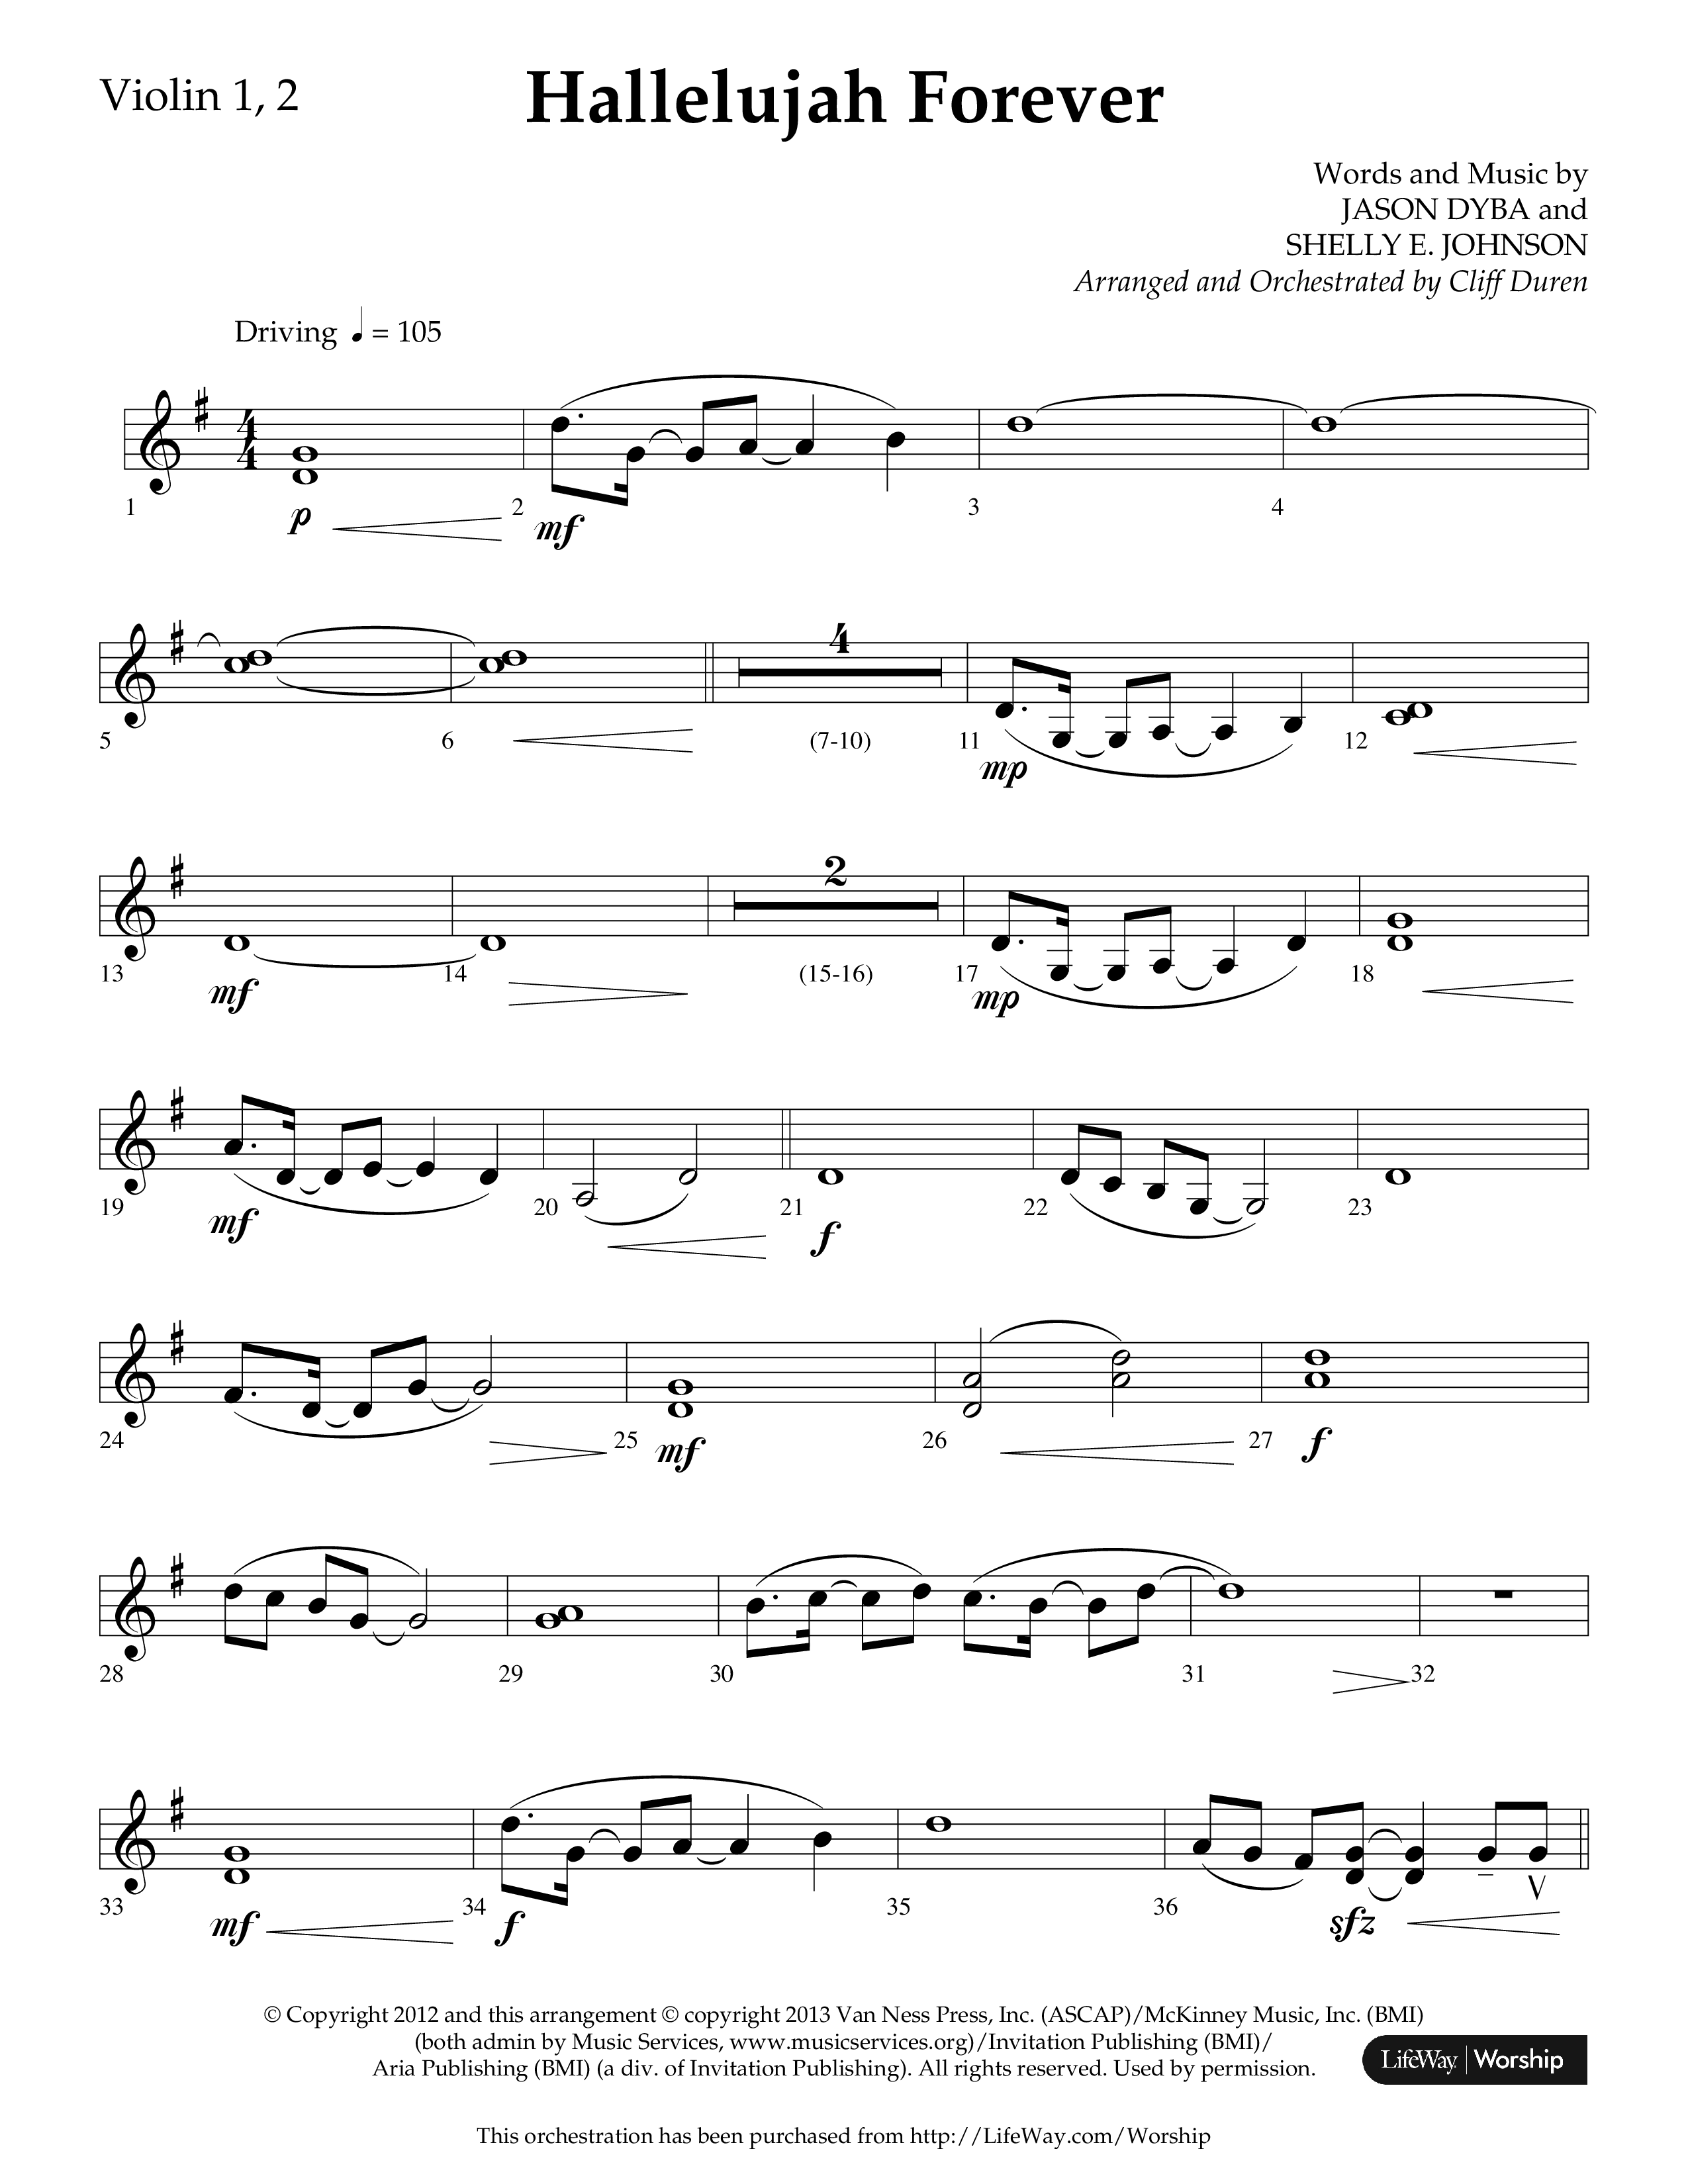 Hallelujah Forever (Choral Anthem SATB) Violin 1/2 (Lifeway Choral / Arr. Cliff Duren)